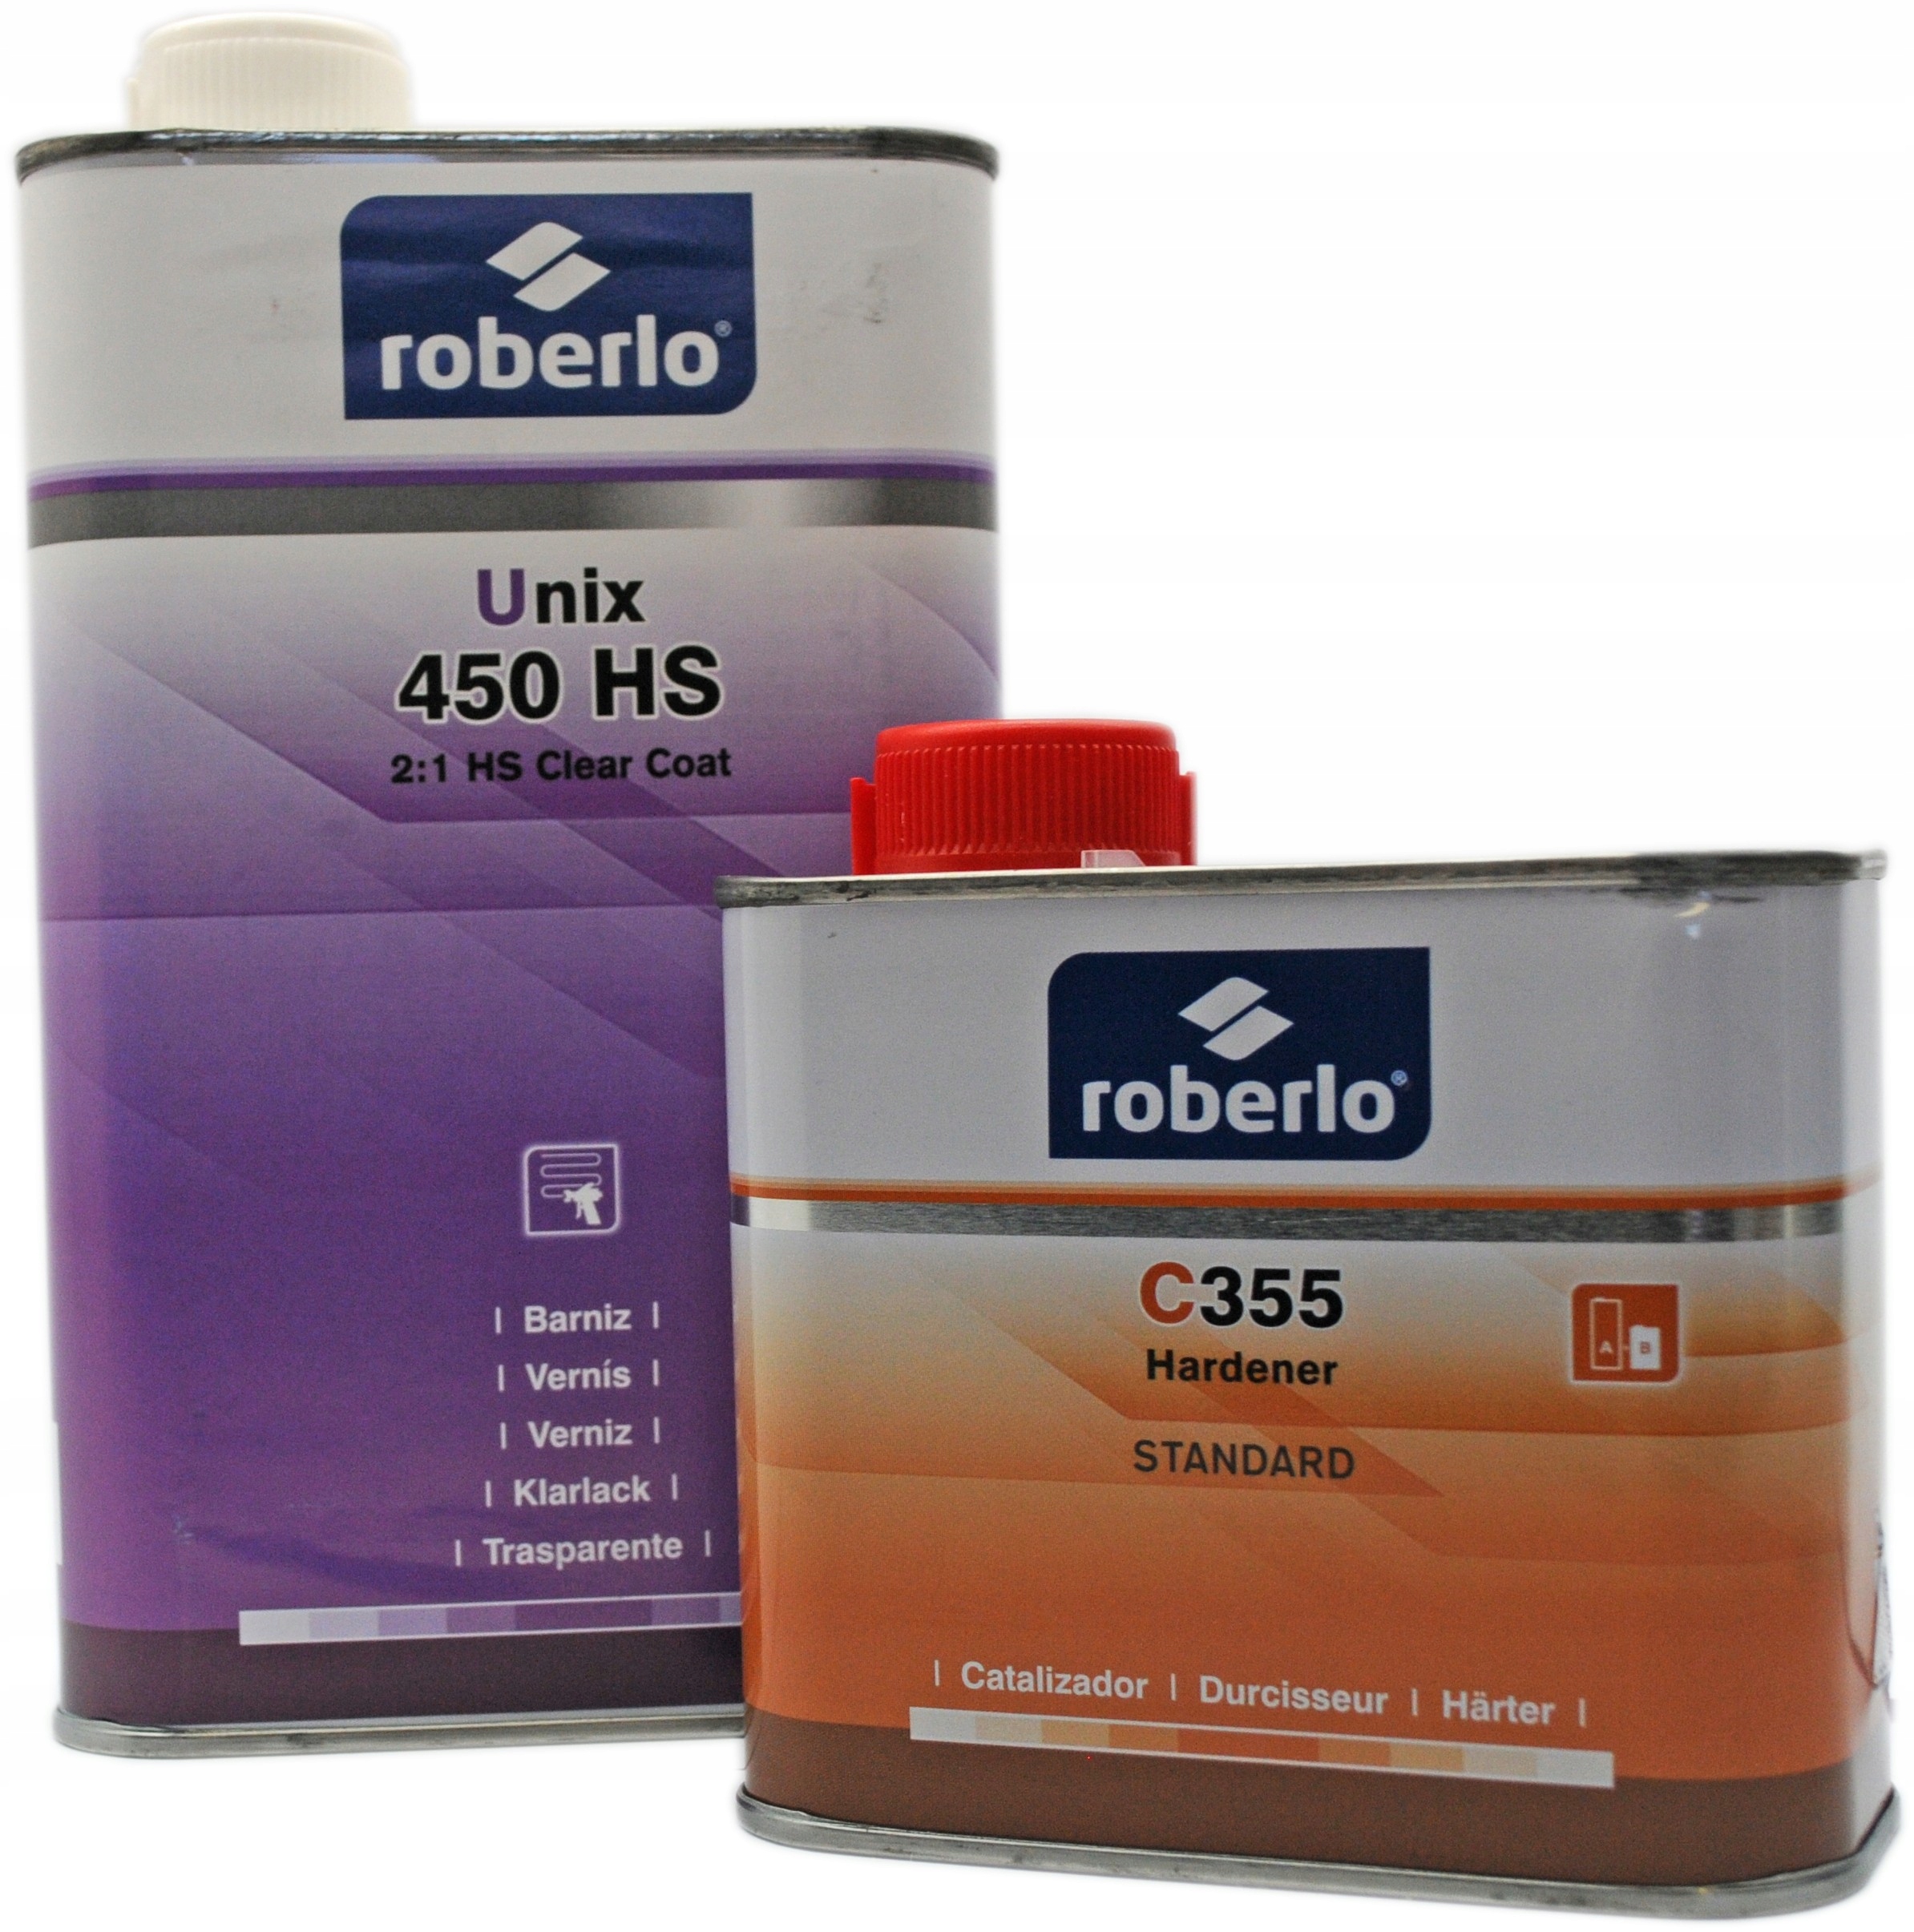 Átlátszó lakk ROBERLO UNIX-450 HS PREMIUM 2:1, 1 liter + 500 ml keményítő + híg.